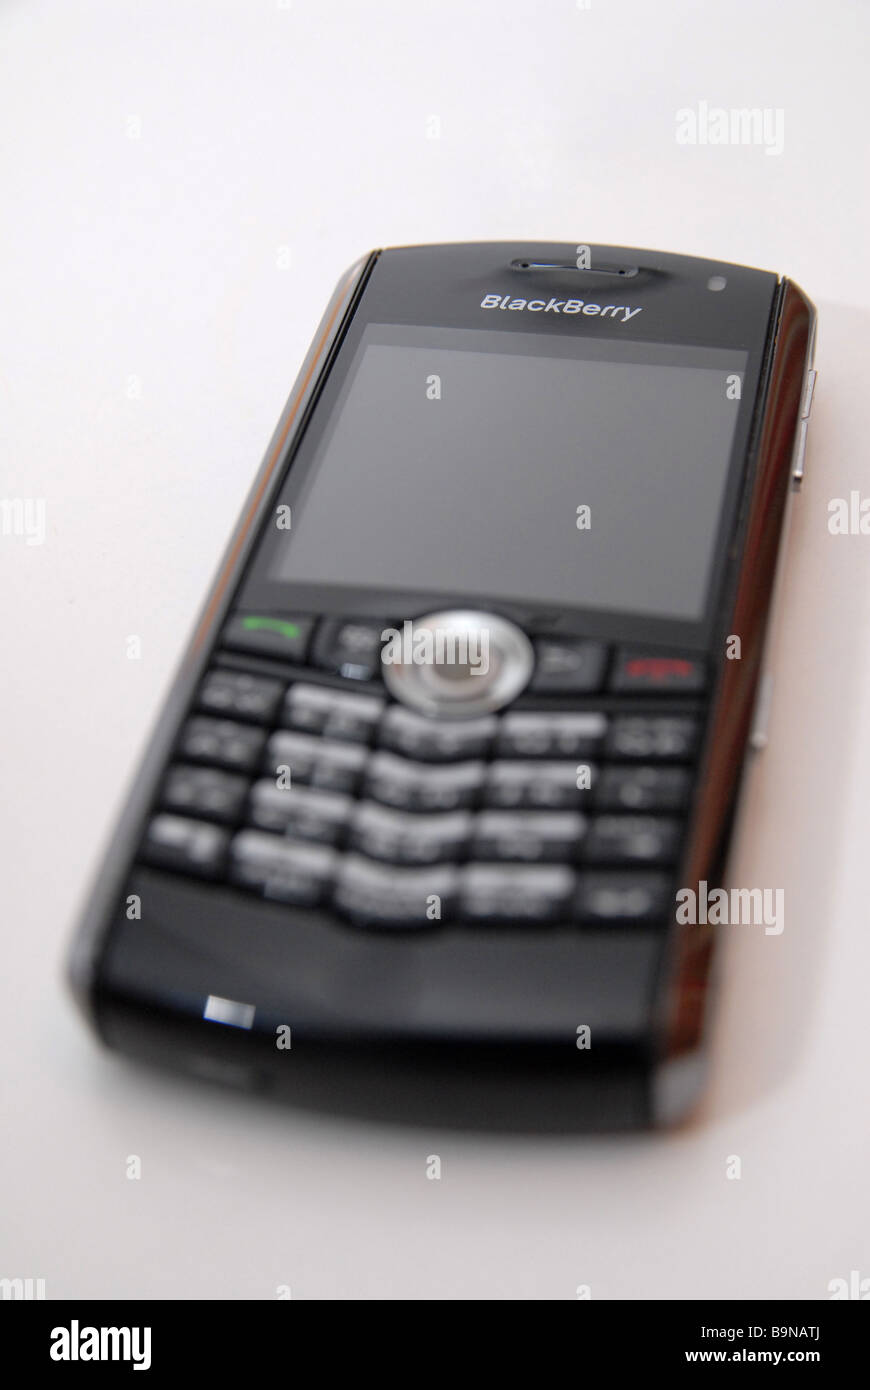 Un téléphone mobile Blackberry/périphérique Banque D'Images